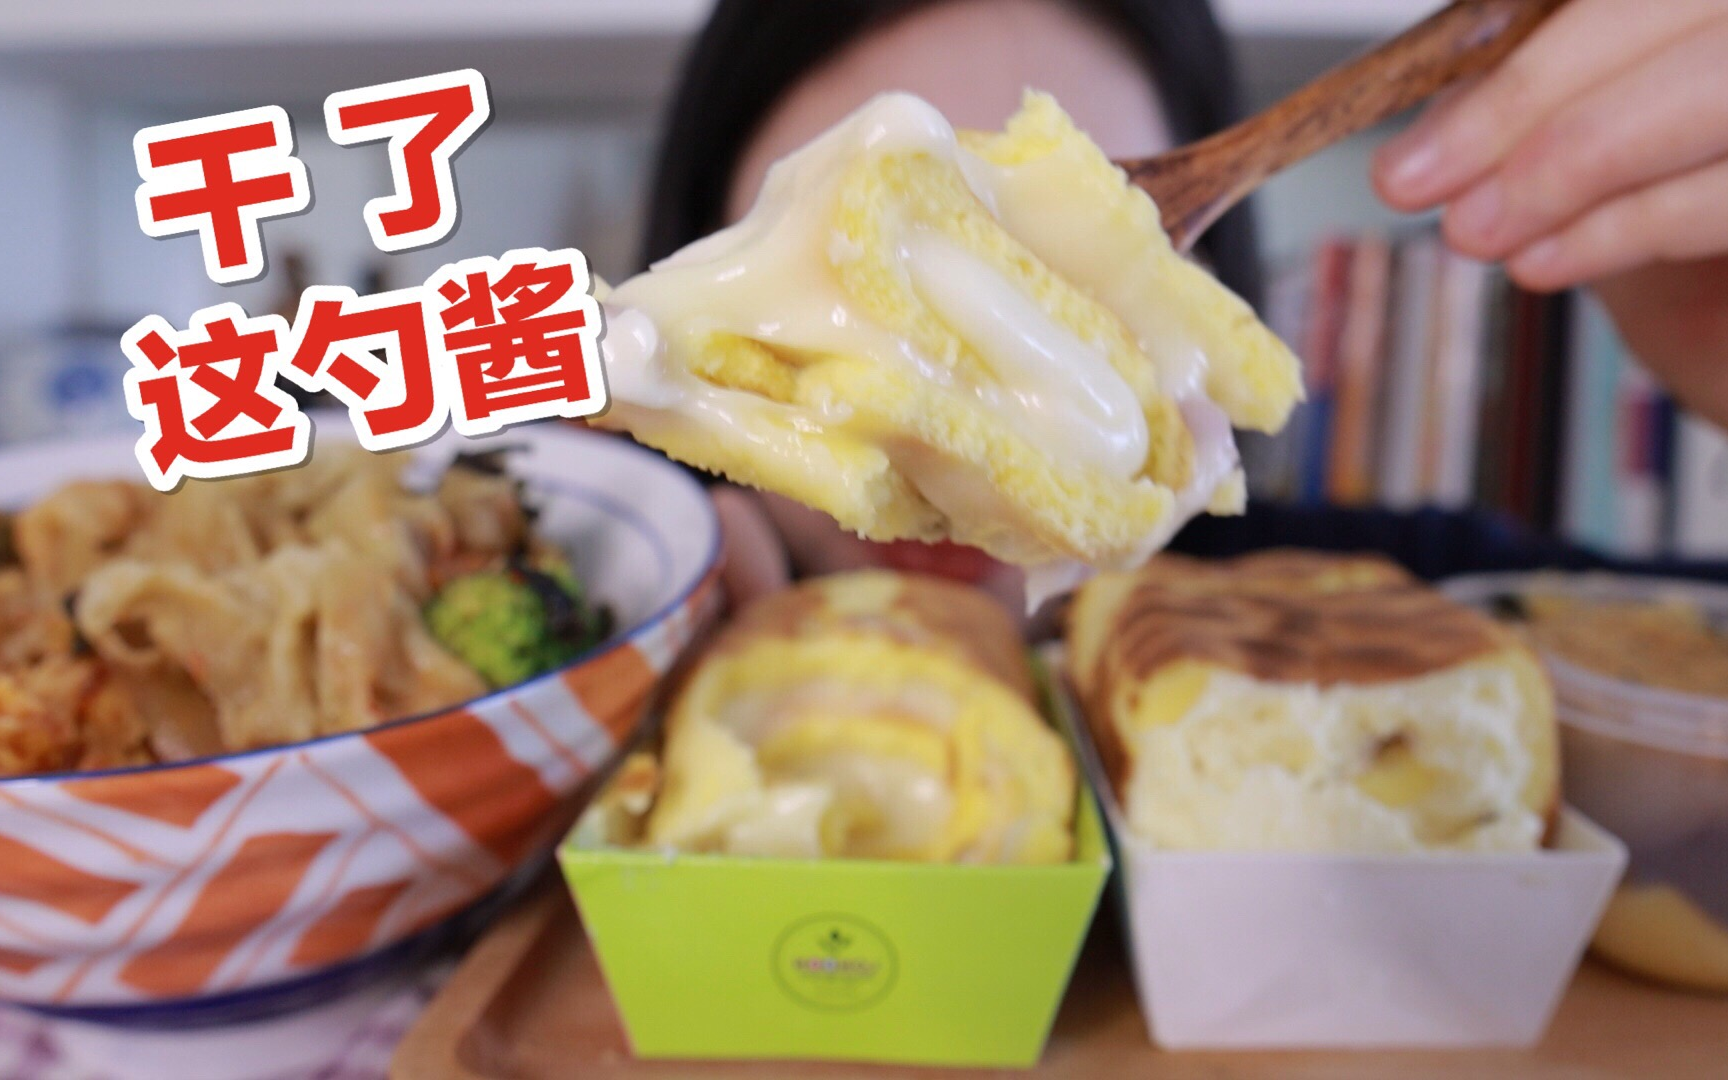 芋圆虎皮卷+冰淇淋虎皮卷+芋泥流沙麻薯盒子+泡菜肥牛饭